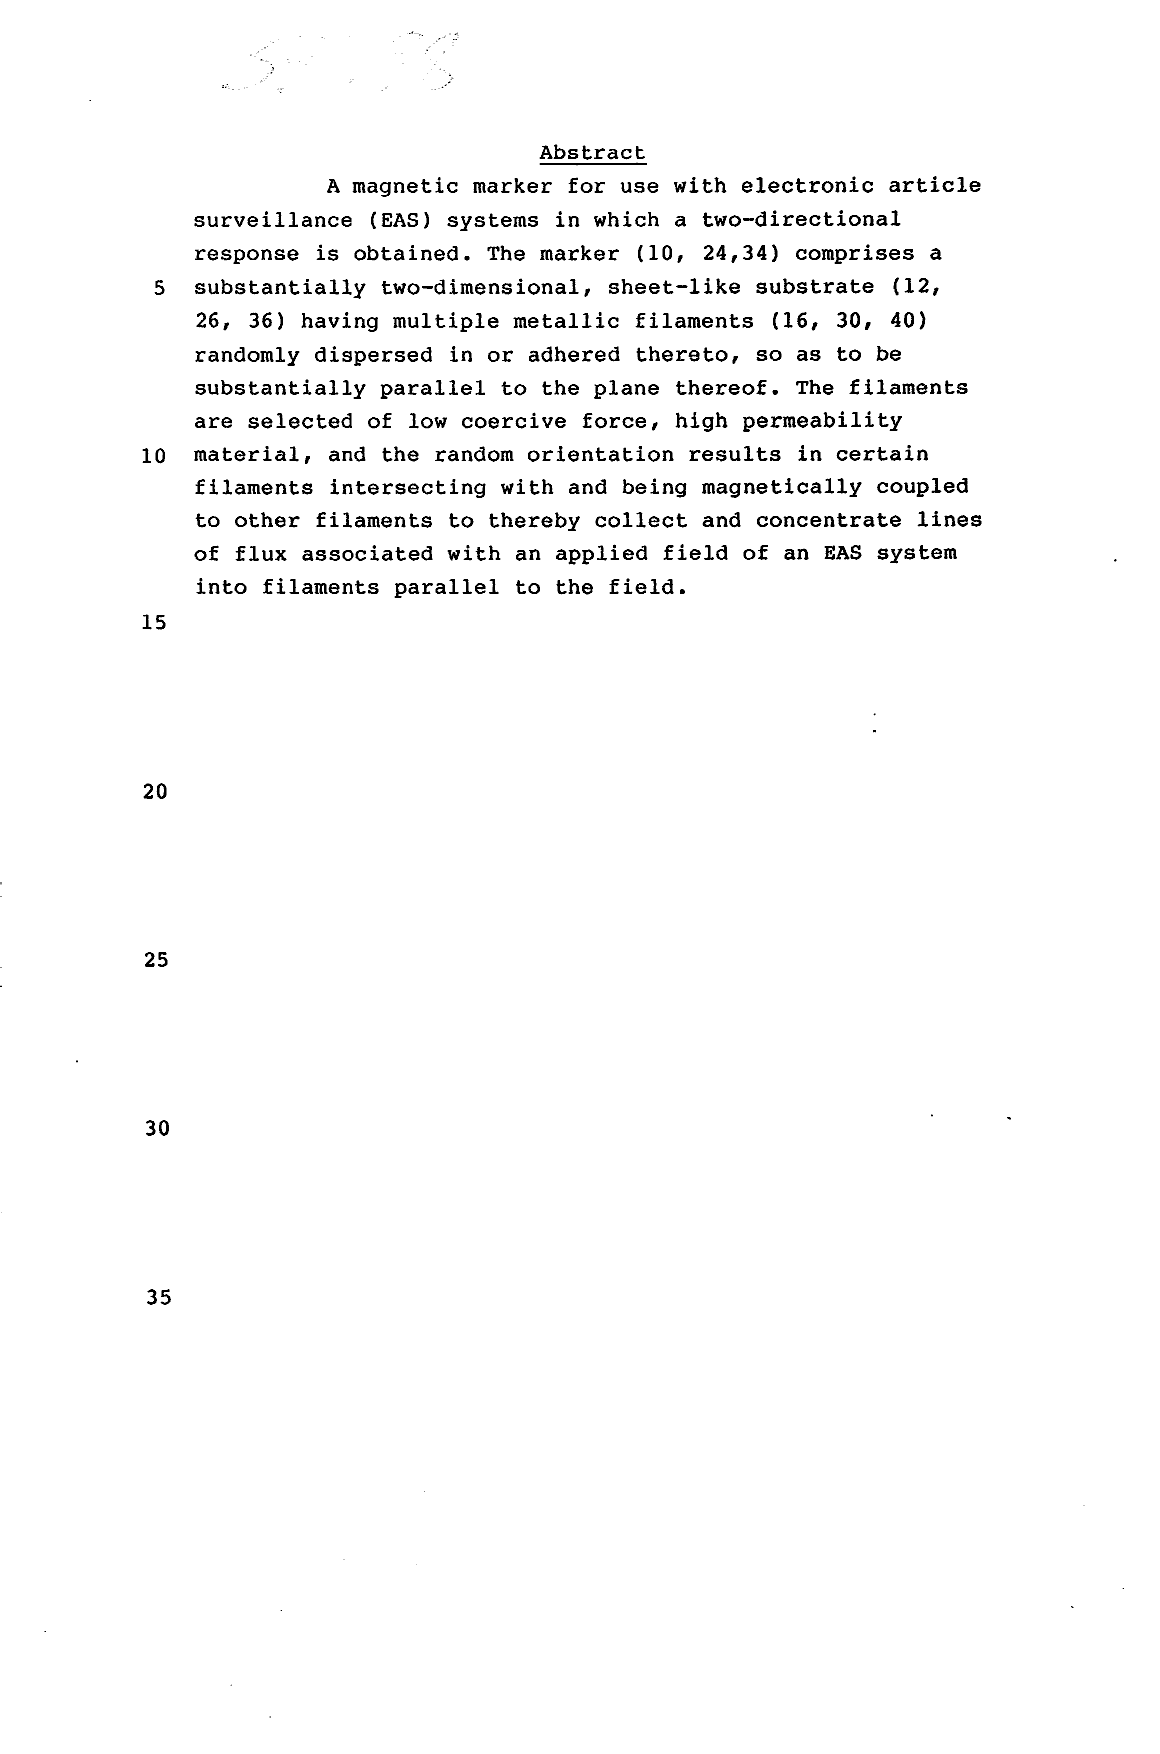 Document de brevet canadien 1310383. Abrégé 19931108. Image 1 de 1